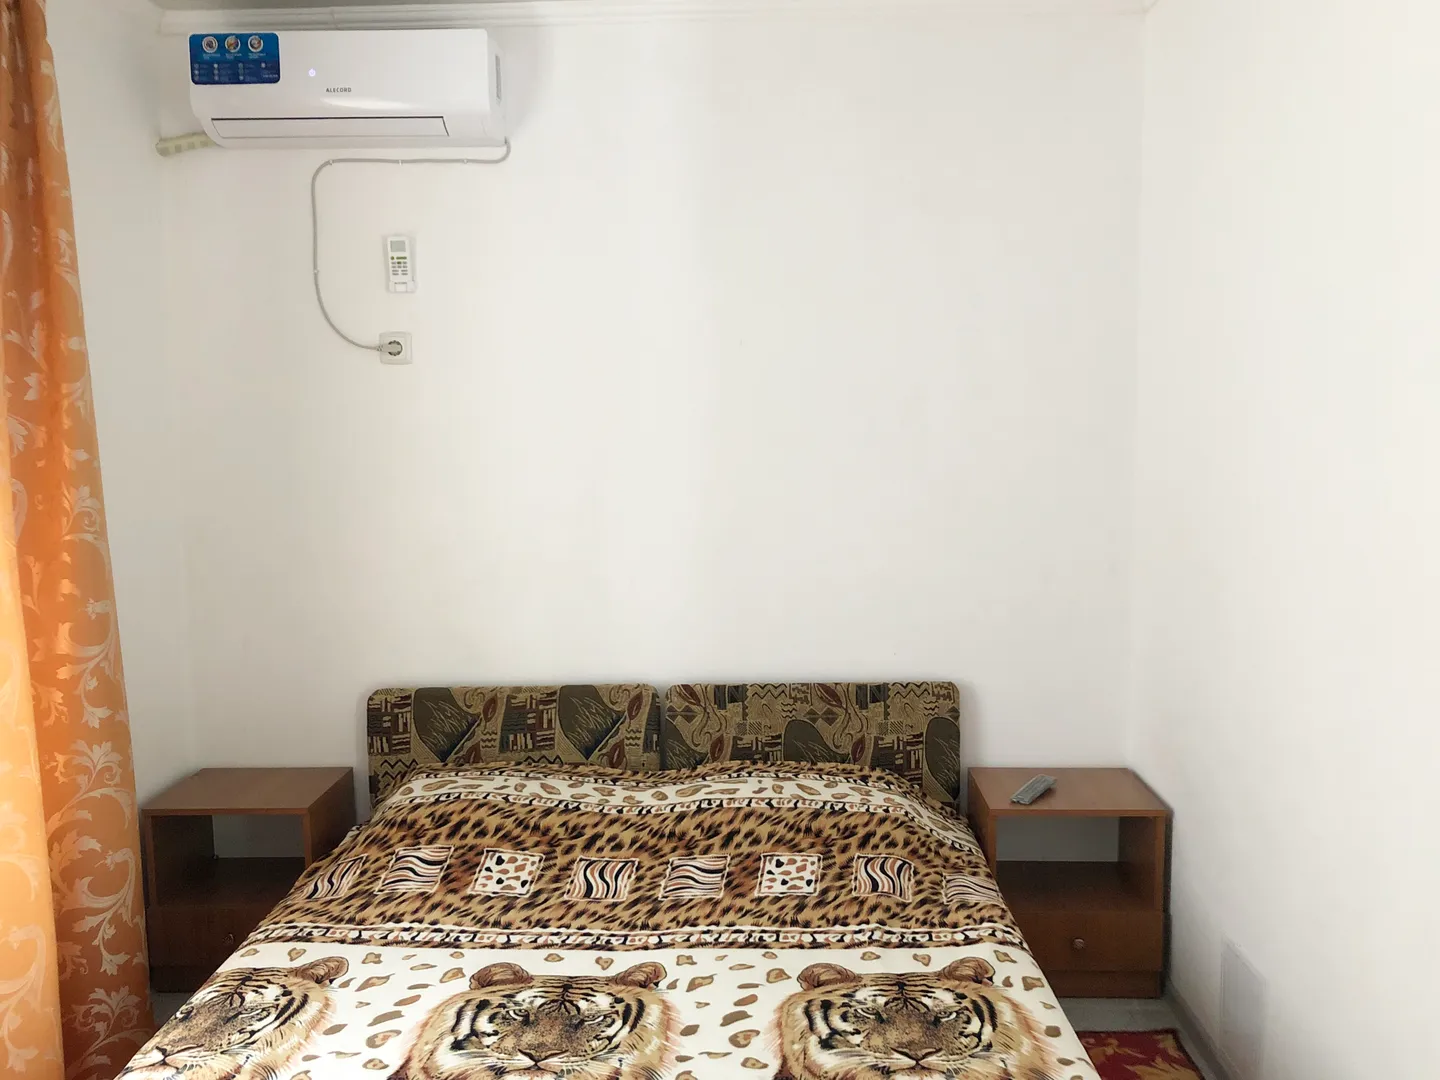 Кровати можно поставить рядом, а можно раздвинуть к стенам для гостей, которые хотят спать отдельно